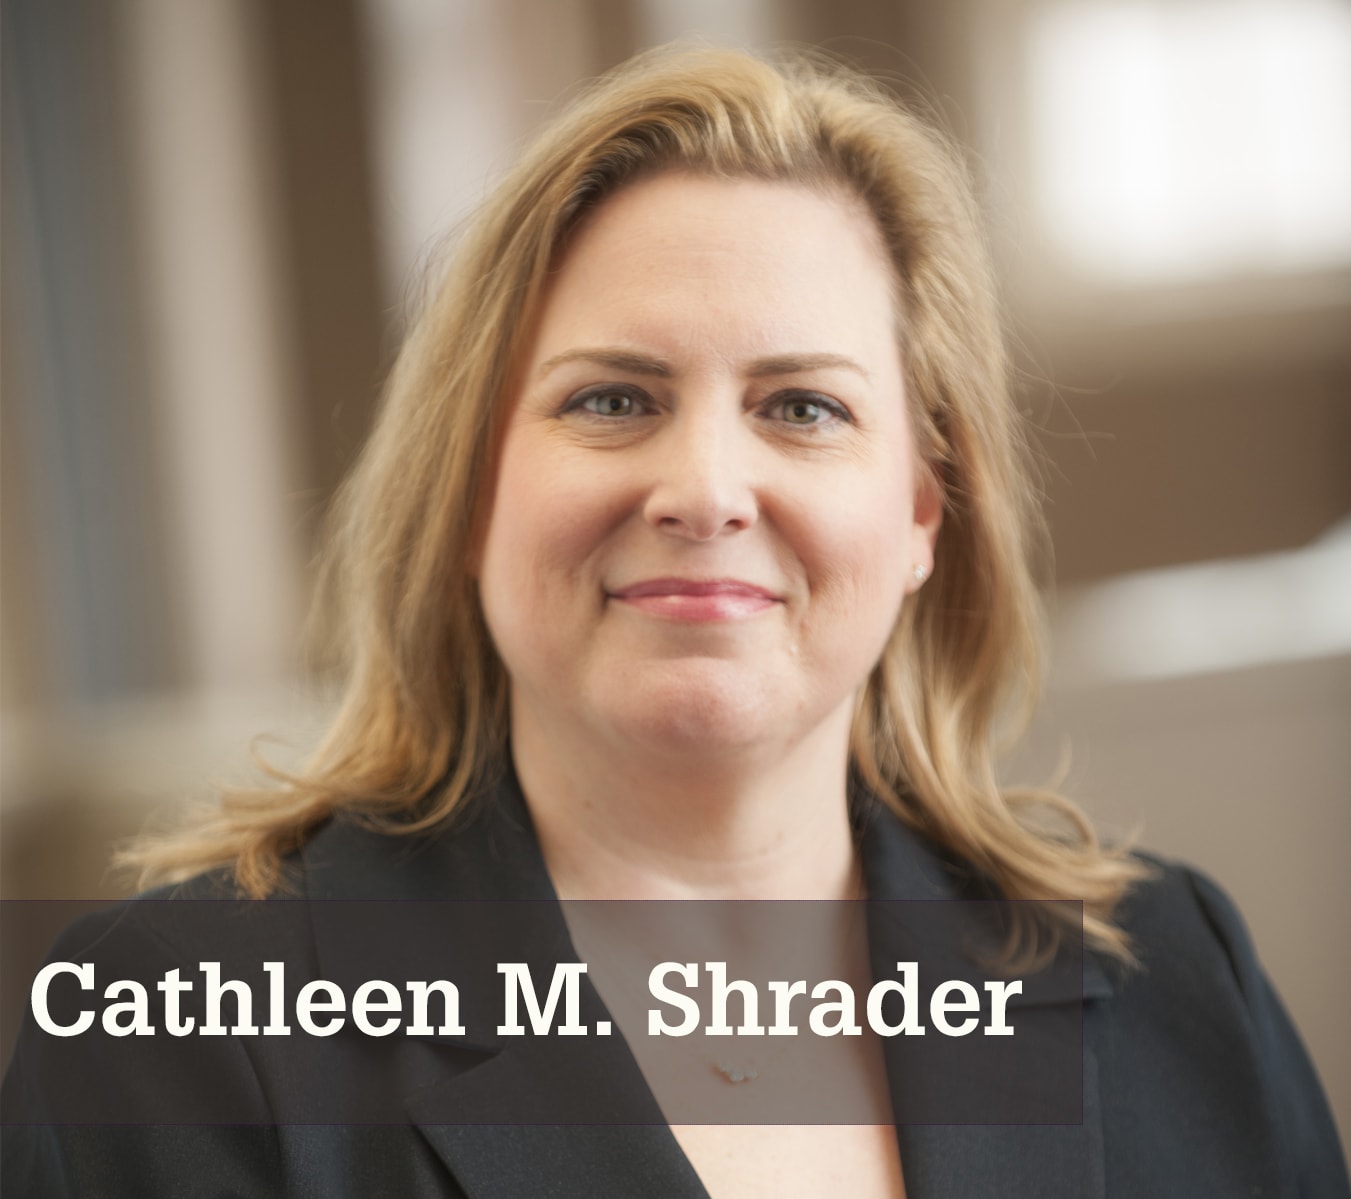 Cathleen M. Shrader